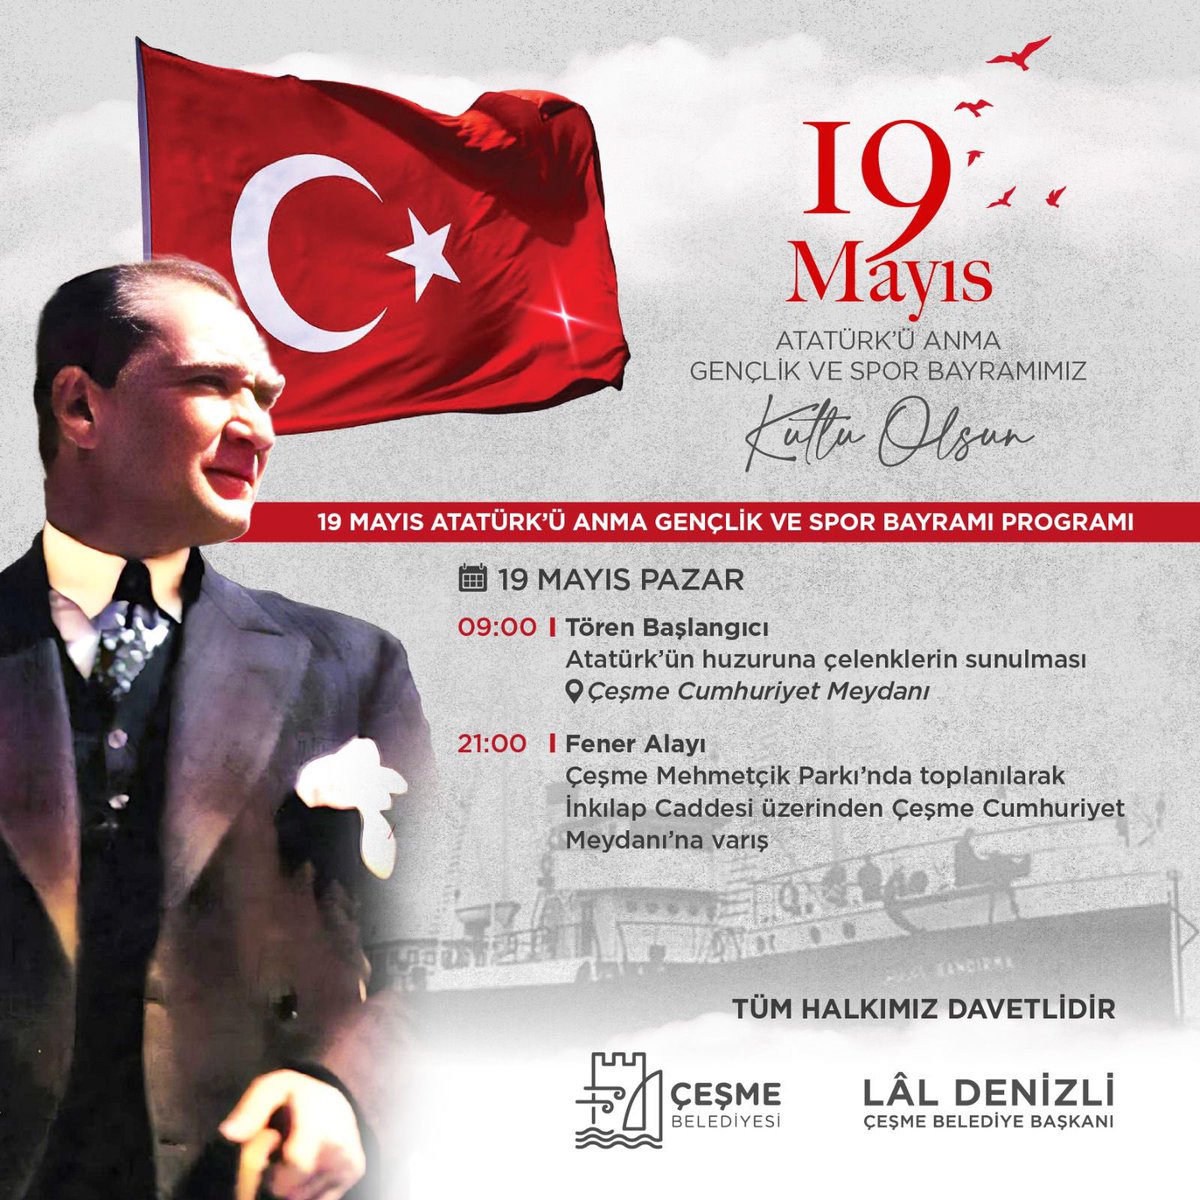 19 Mayıs Atatürk’ü Anma Gençlik ve Spor Bayramımızı büyük bir çoşkuyla Çeşme sokaklarında kutlayacağız!🇹🇷 Bu heyecanı paylaşmak için tüm vatandaşlarımızı 19 Mayıs, Pazar akşamı saat 21:00’de fener alayına davet ediyorum. Bir çift mavi gözün ışığında 19 Mayıs ruhunu hep birlikte